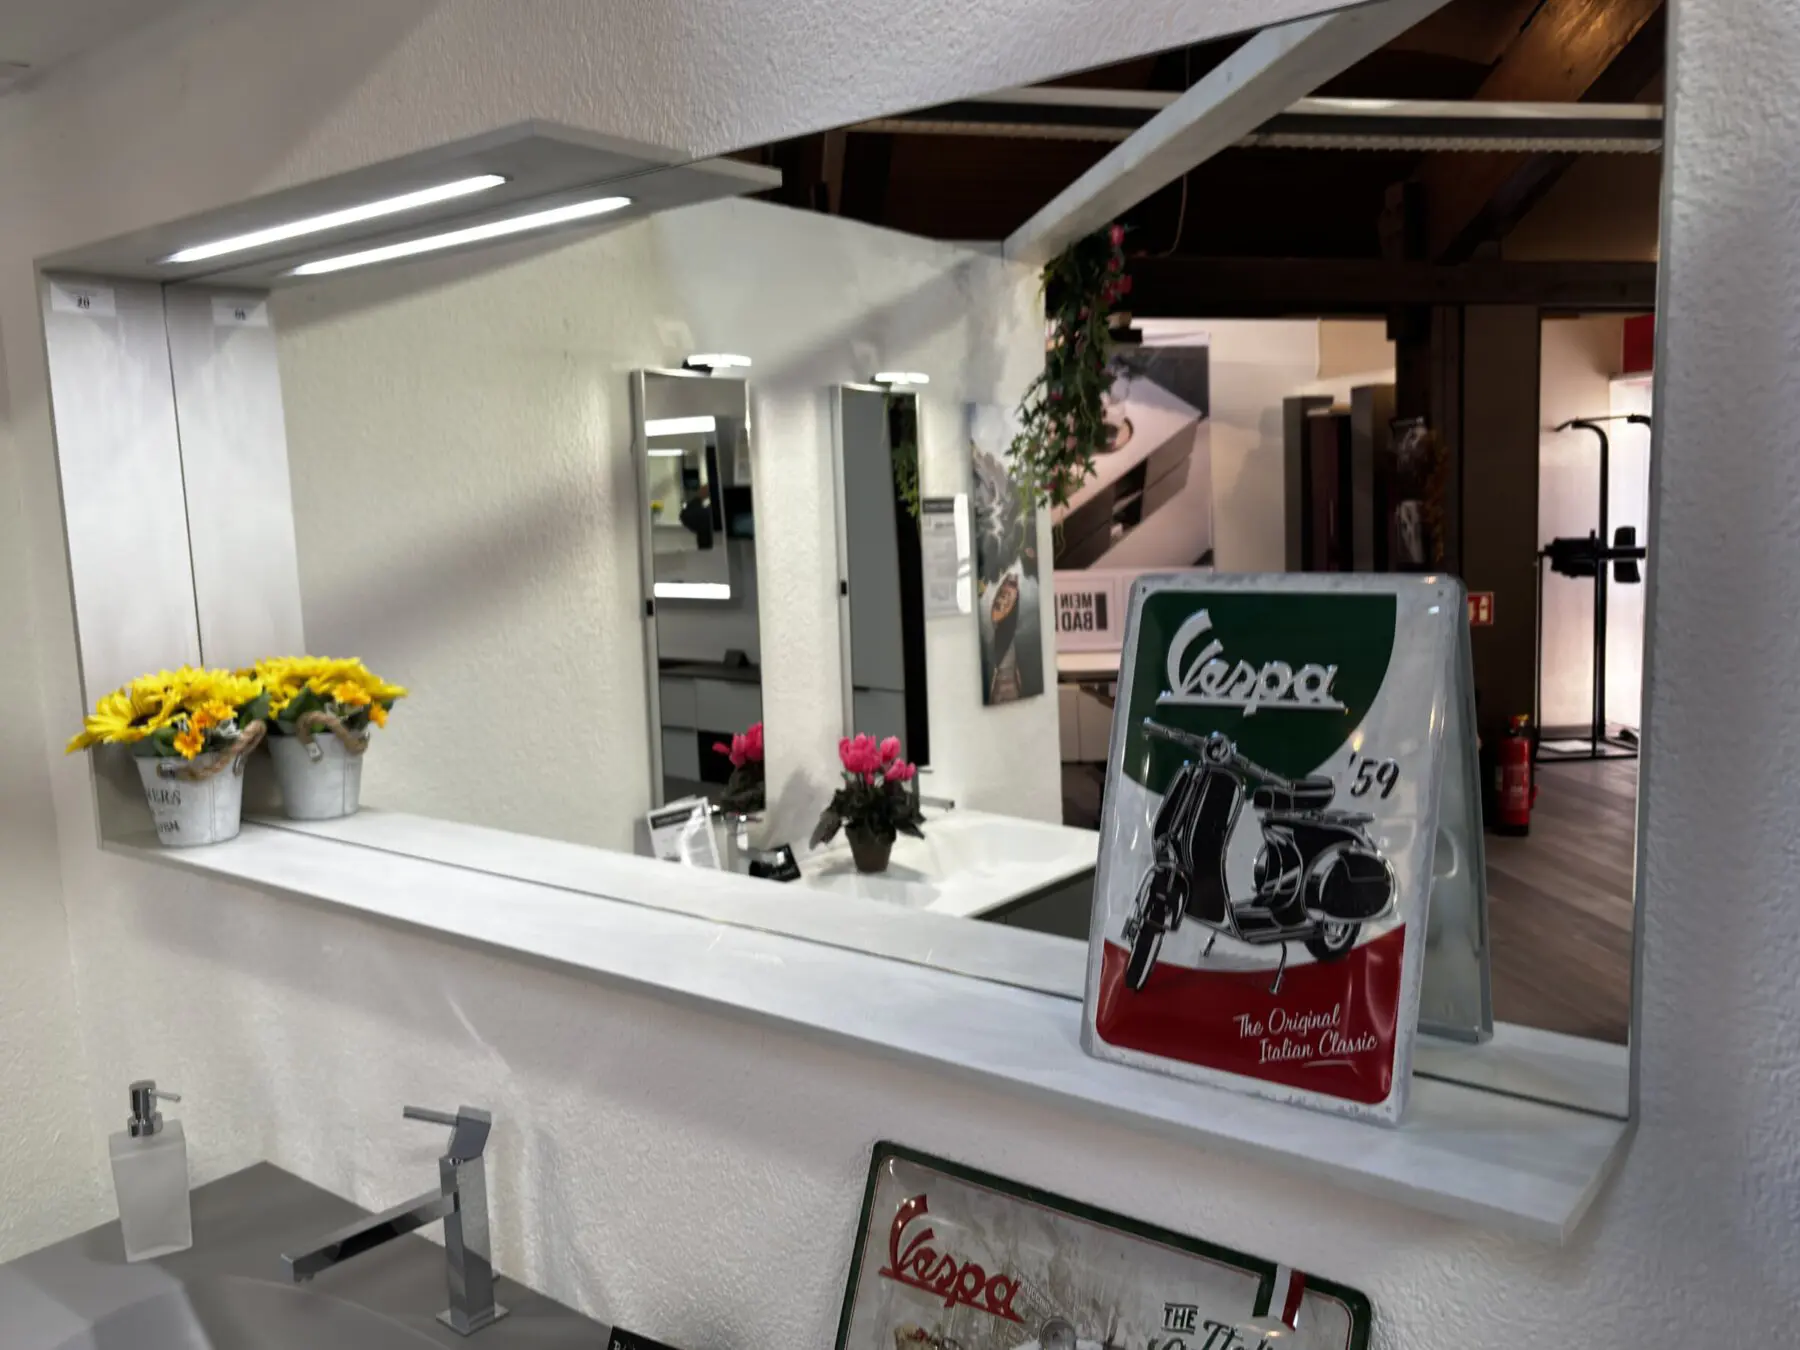 Hochwertiger grauer Waschtisch mit fugenlos integriertem Becken, Ablage und Rahmen-Spiegel Abverkauf Ludwigsburg Badausstellung